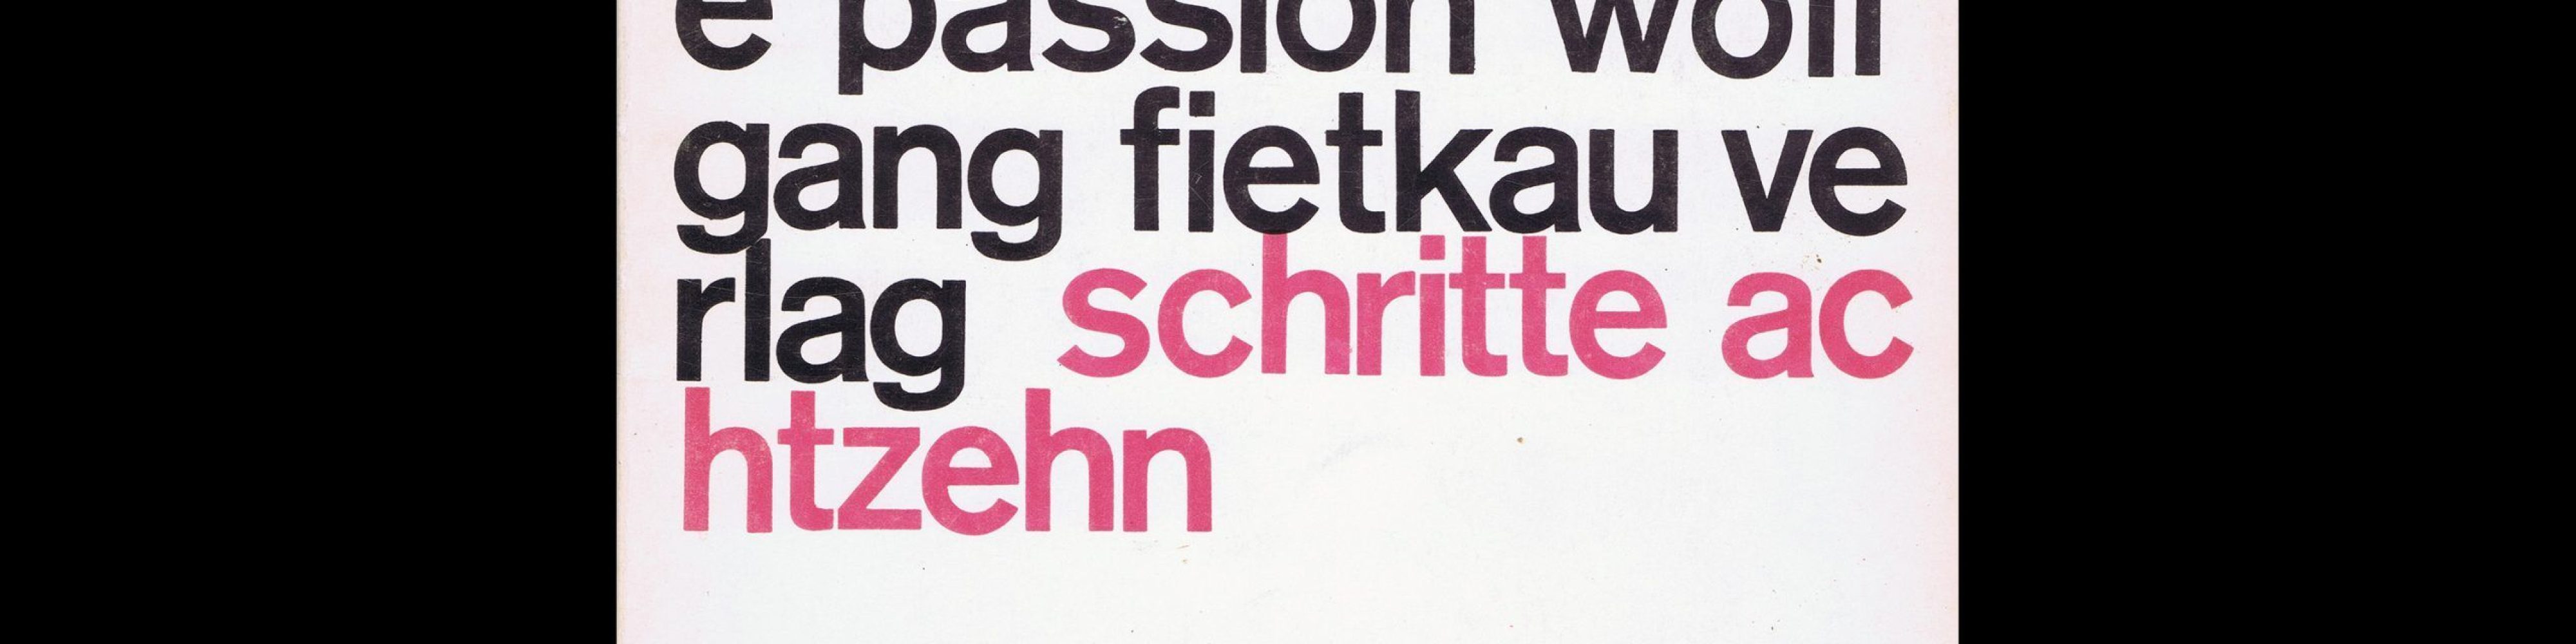 Carl Werner, Vorschlag für eine Passion, Wolfgang Fietkau Verlag, 1971. Designed by Christian Chruxin